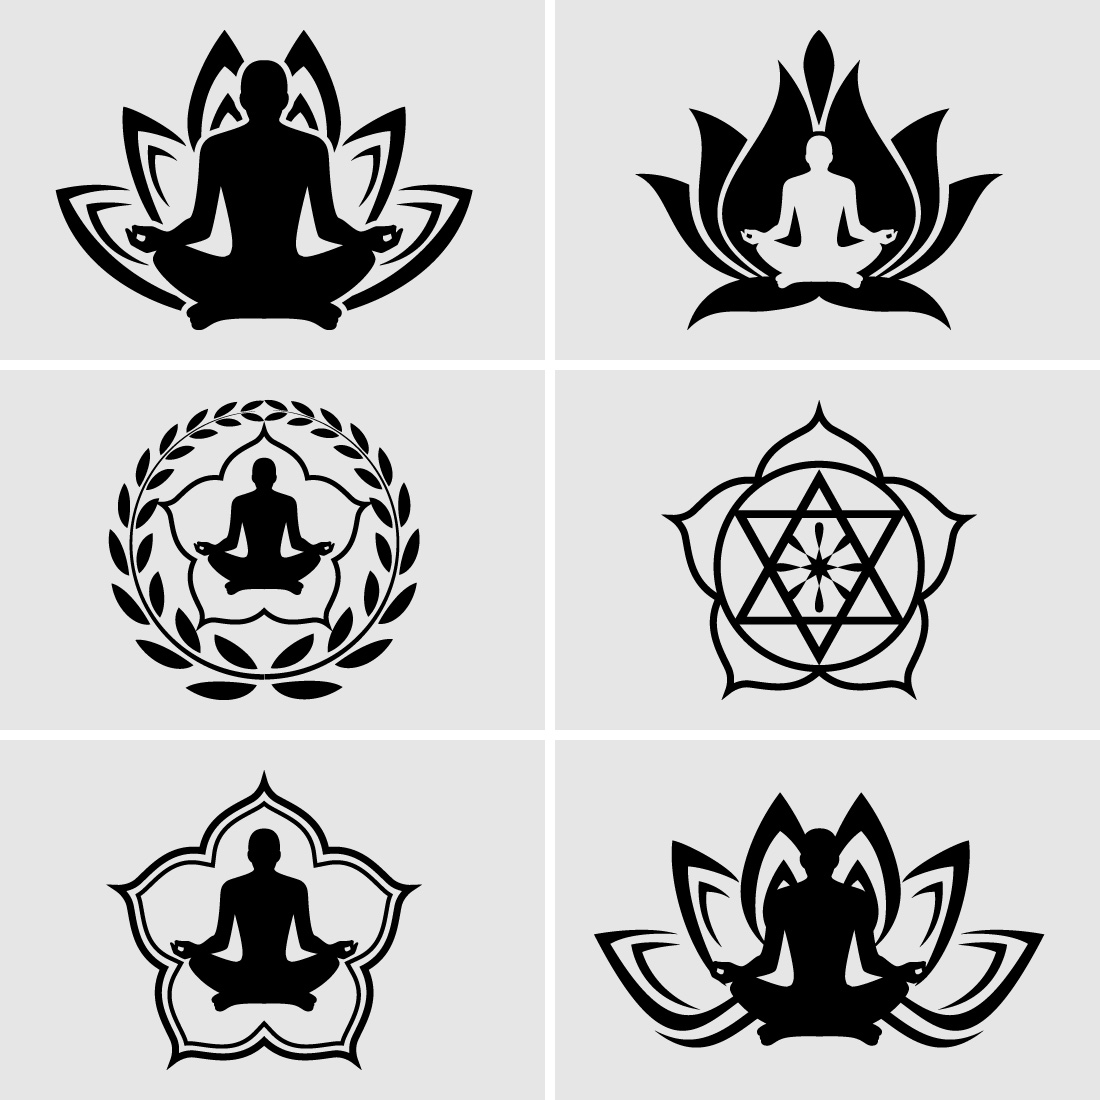 Human meditation in flower vector illustrationYoga logo vector emblem preview image.